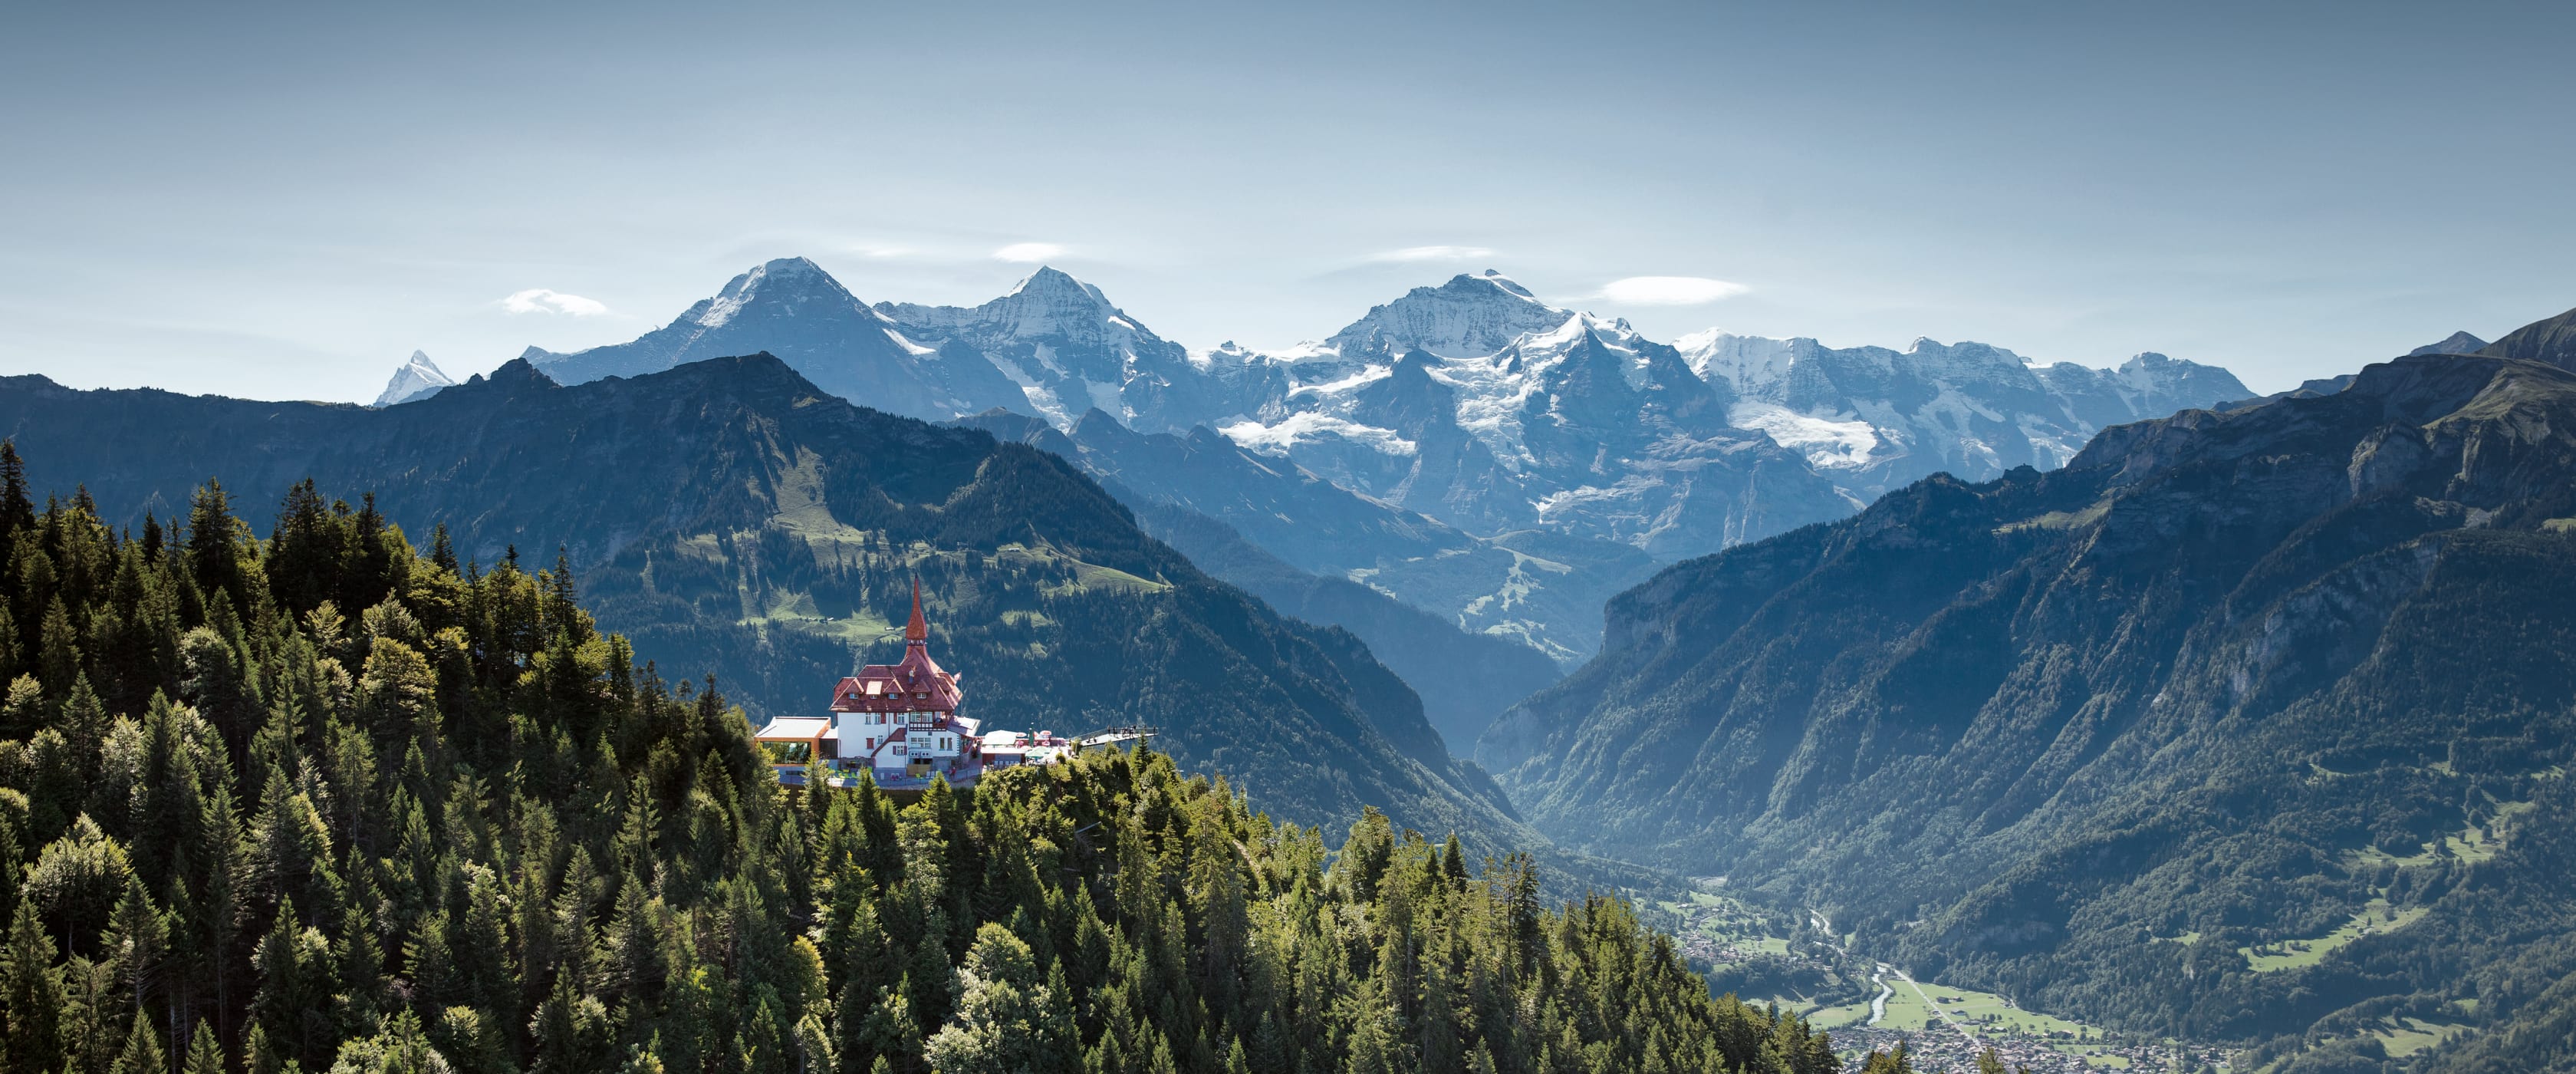 7 انشطة سياحية يمكن القيام بها في جبل هاردر كولم في انترلاكن سويسرا